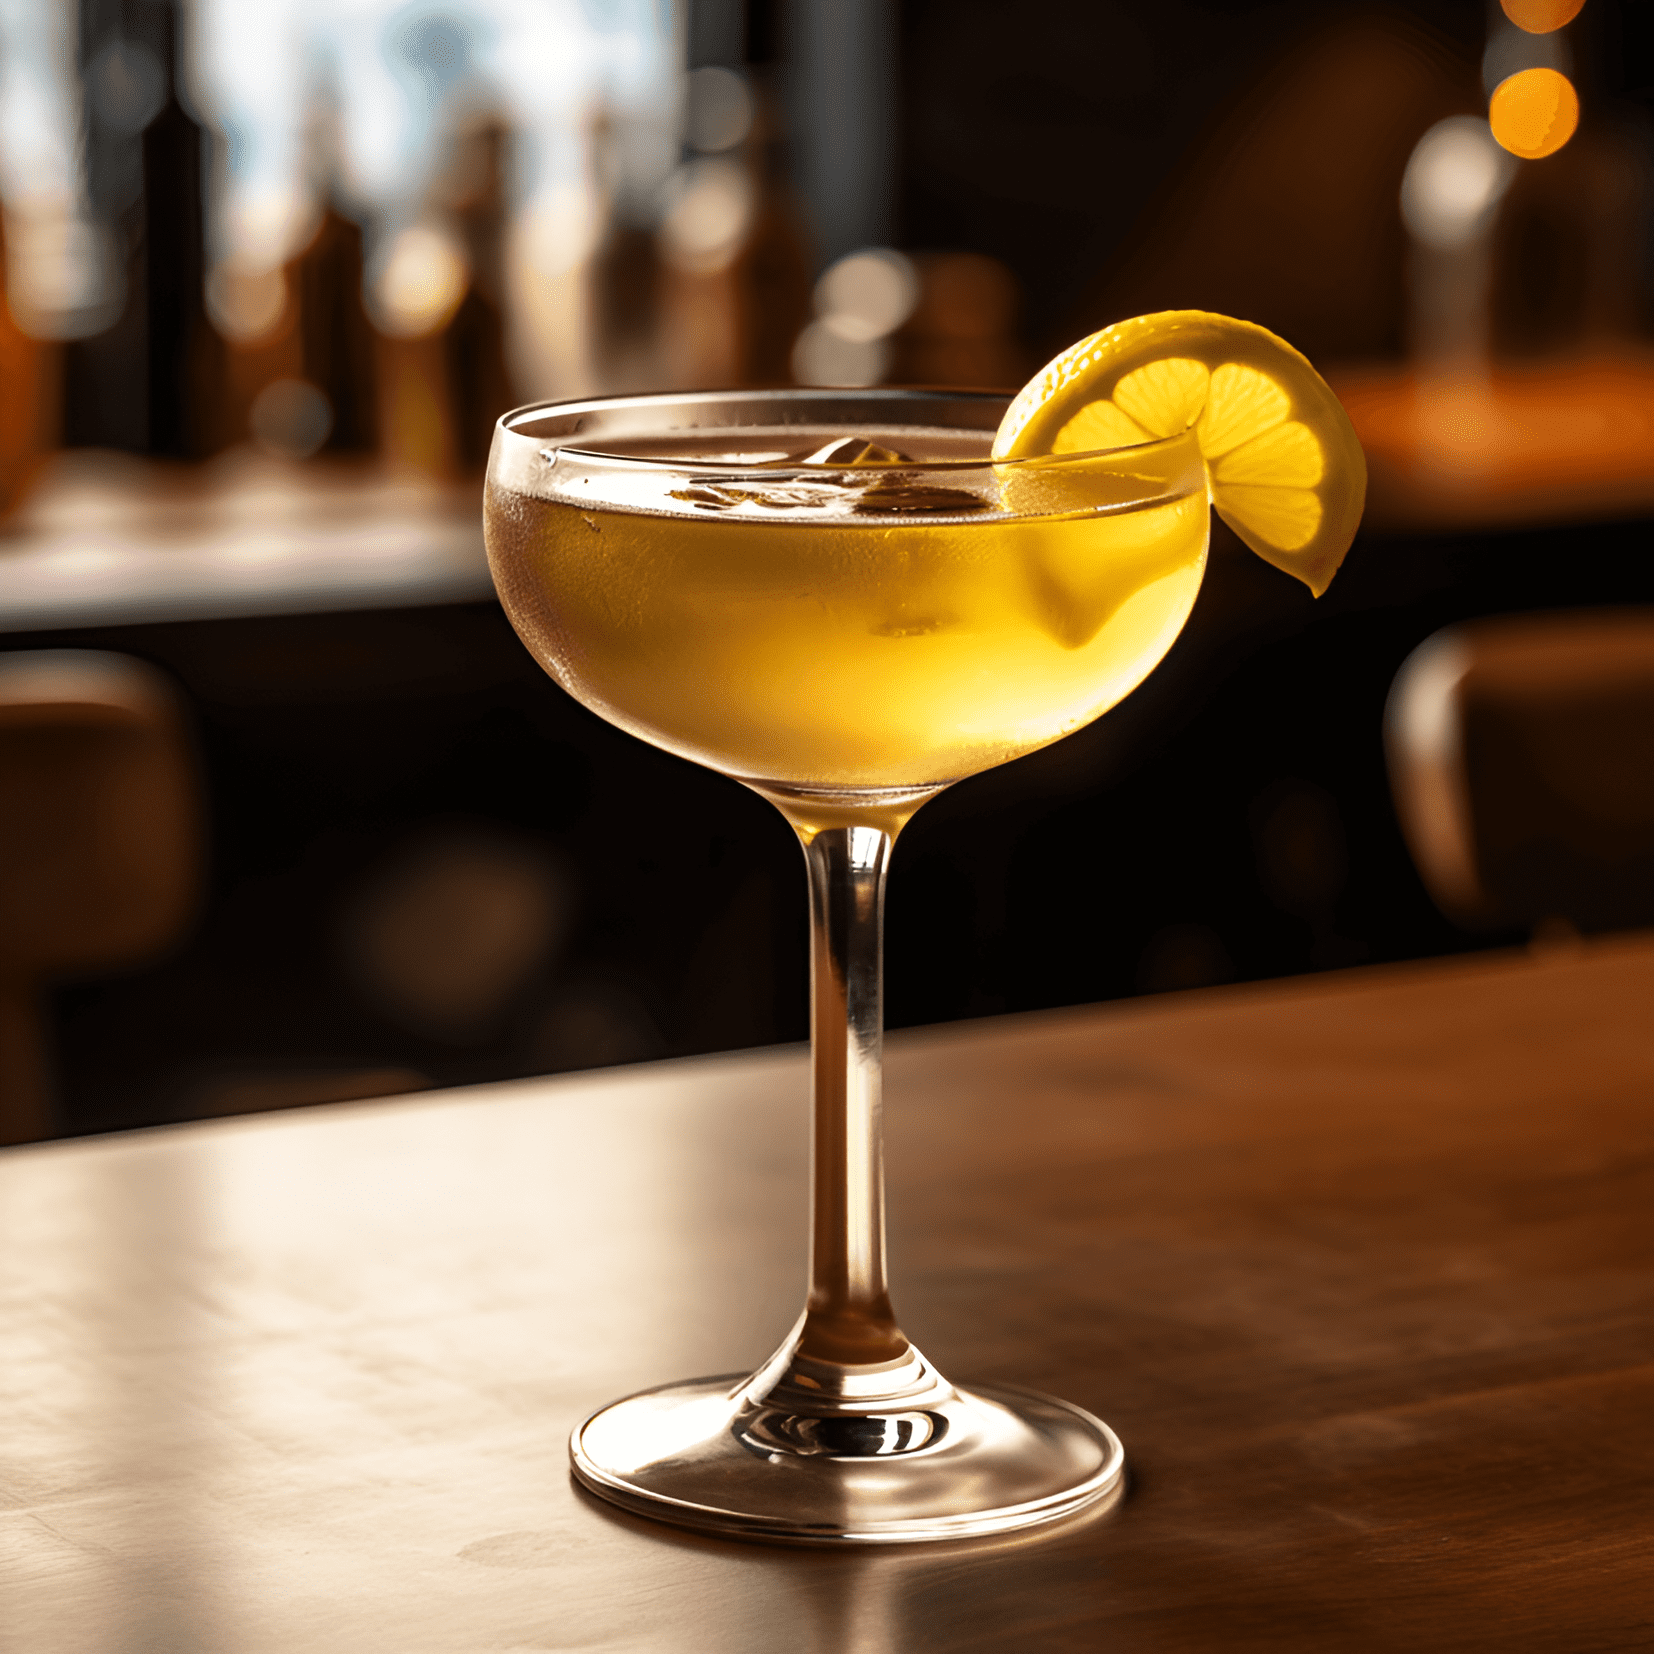 Frisco Cóctel Receta - El cóctel Frisco es una mezcla bien equilibrada de sabores dulces, ácidos y fuertes. La combinación de whisky de centeno y Bénédictine crea un sabor rico, cálido y ligeramente picante, mientras que el jugo de limón agrega un refrescante sabor cítrico.